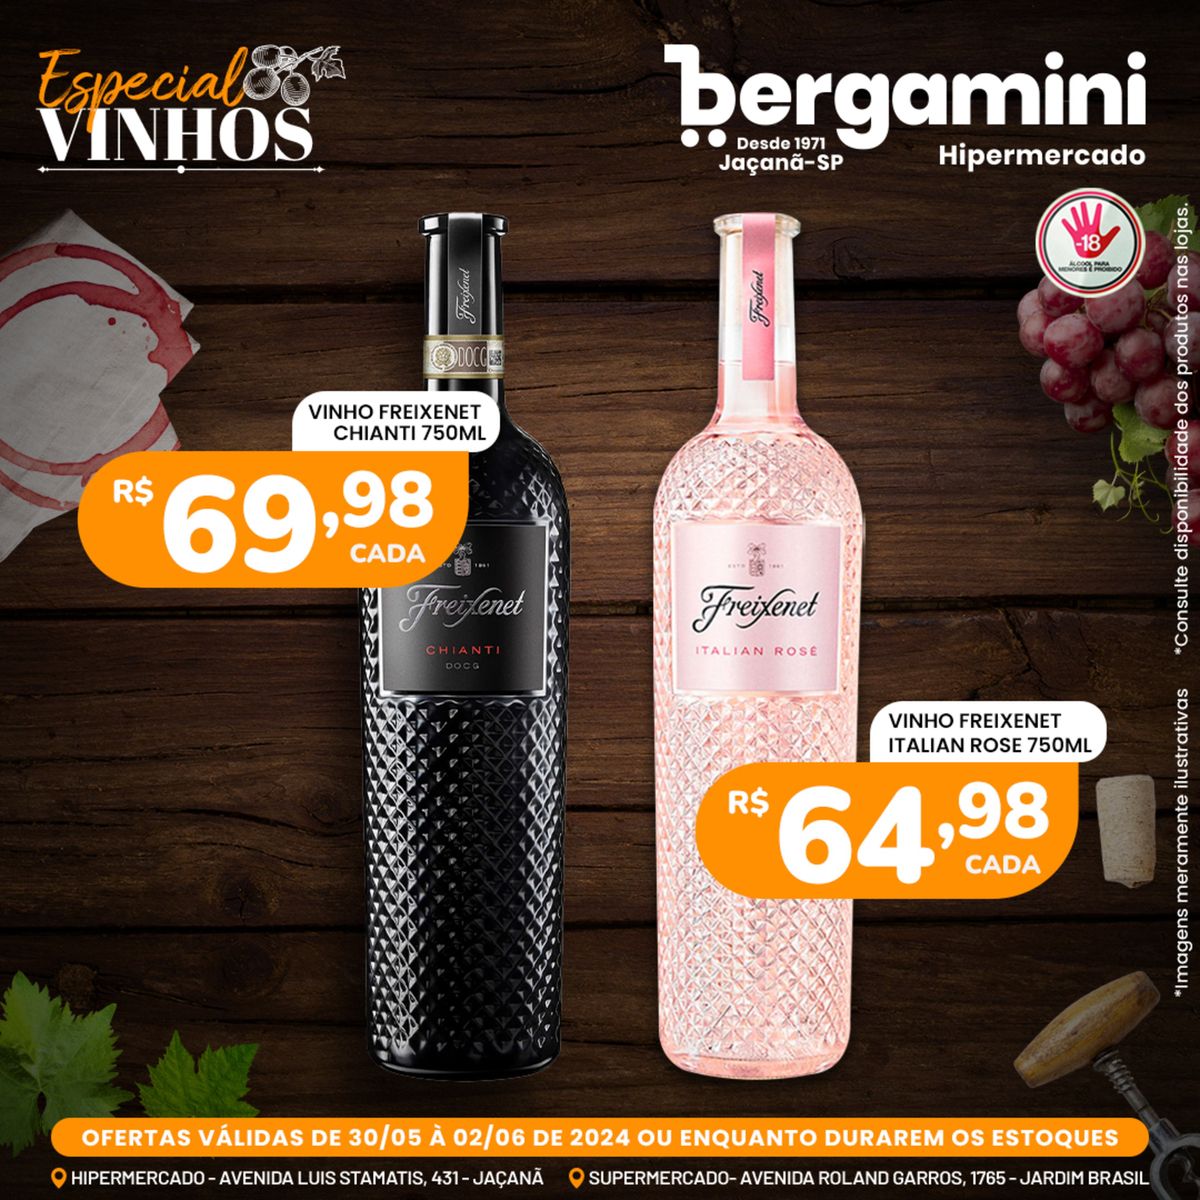 Promoção de vinhos Freixenet no Supermercado Bergamini